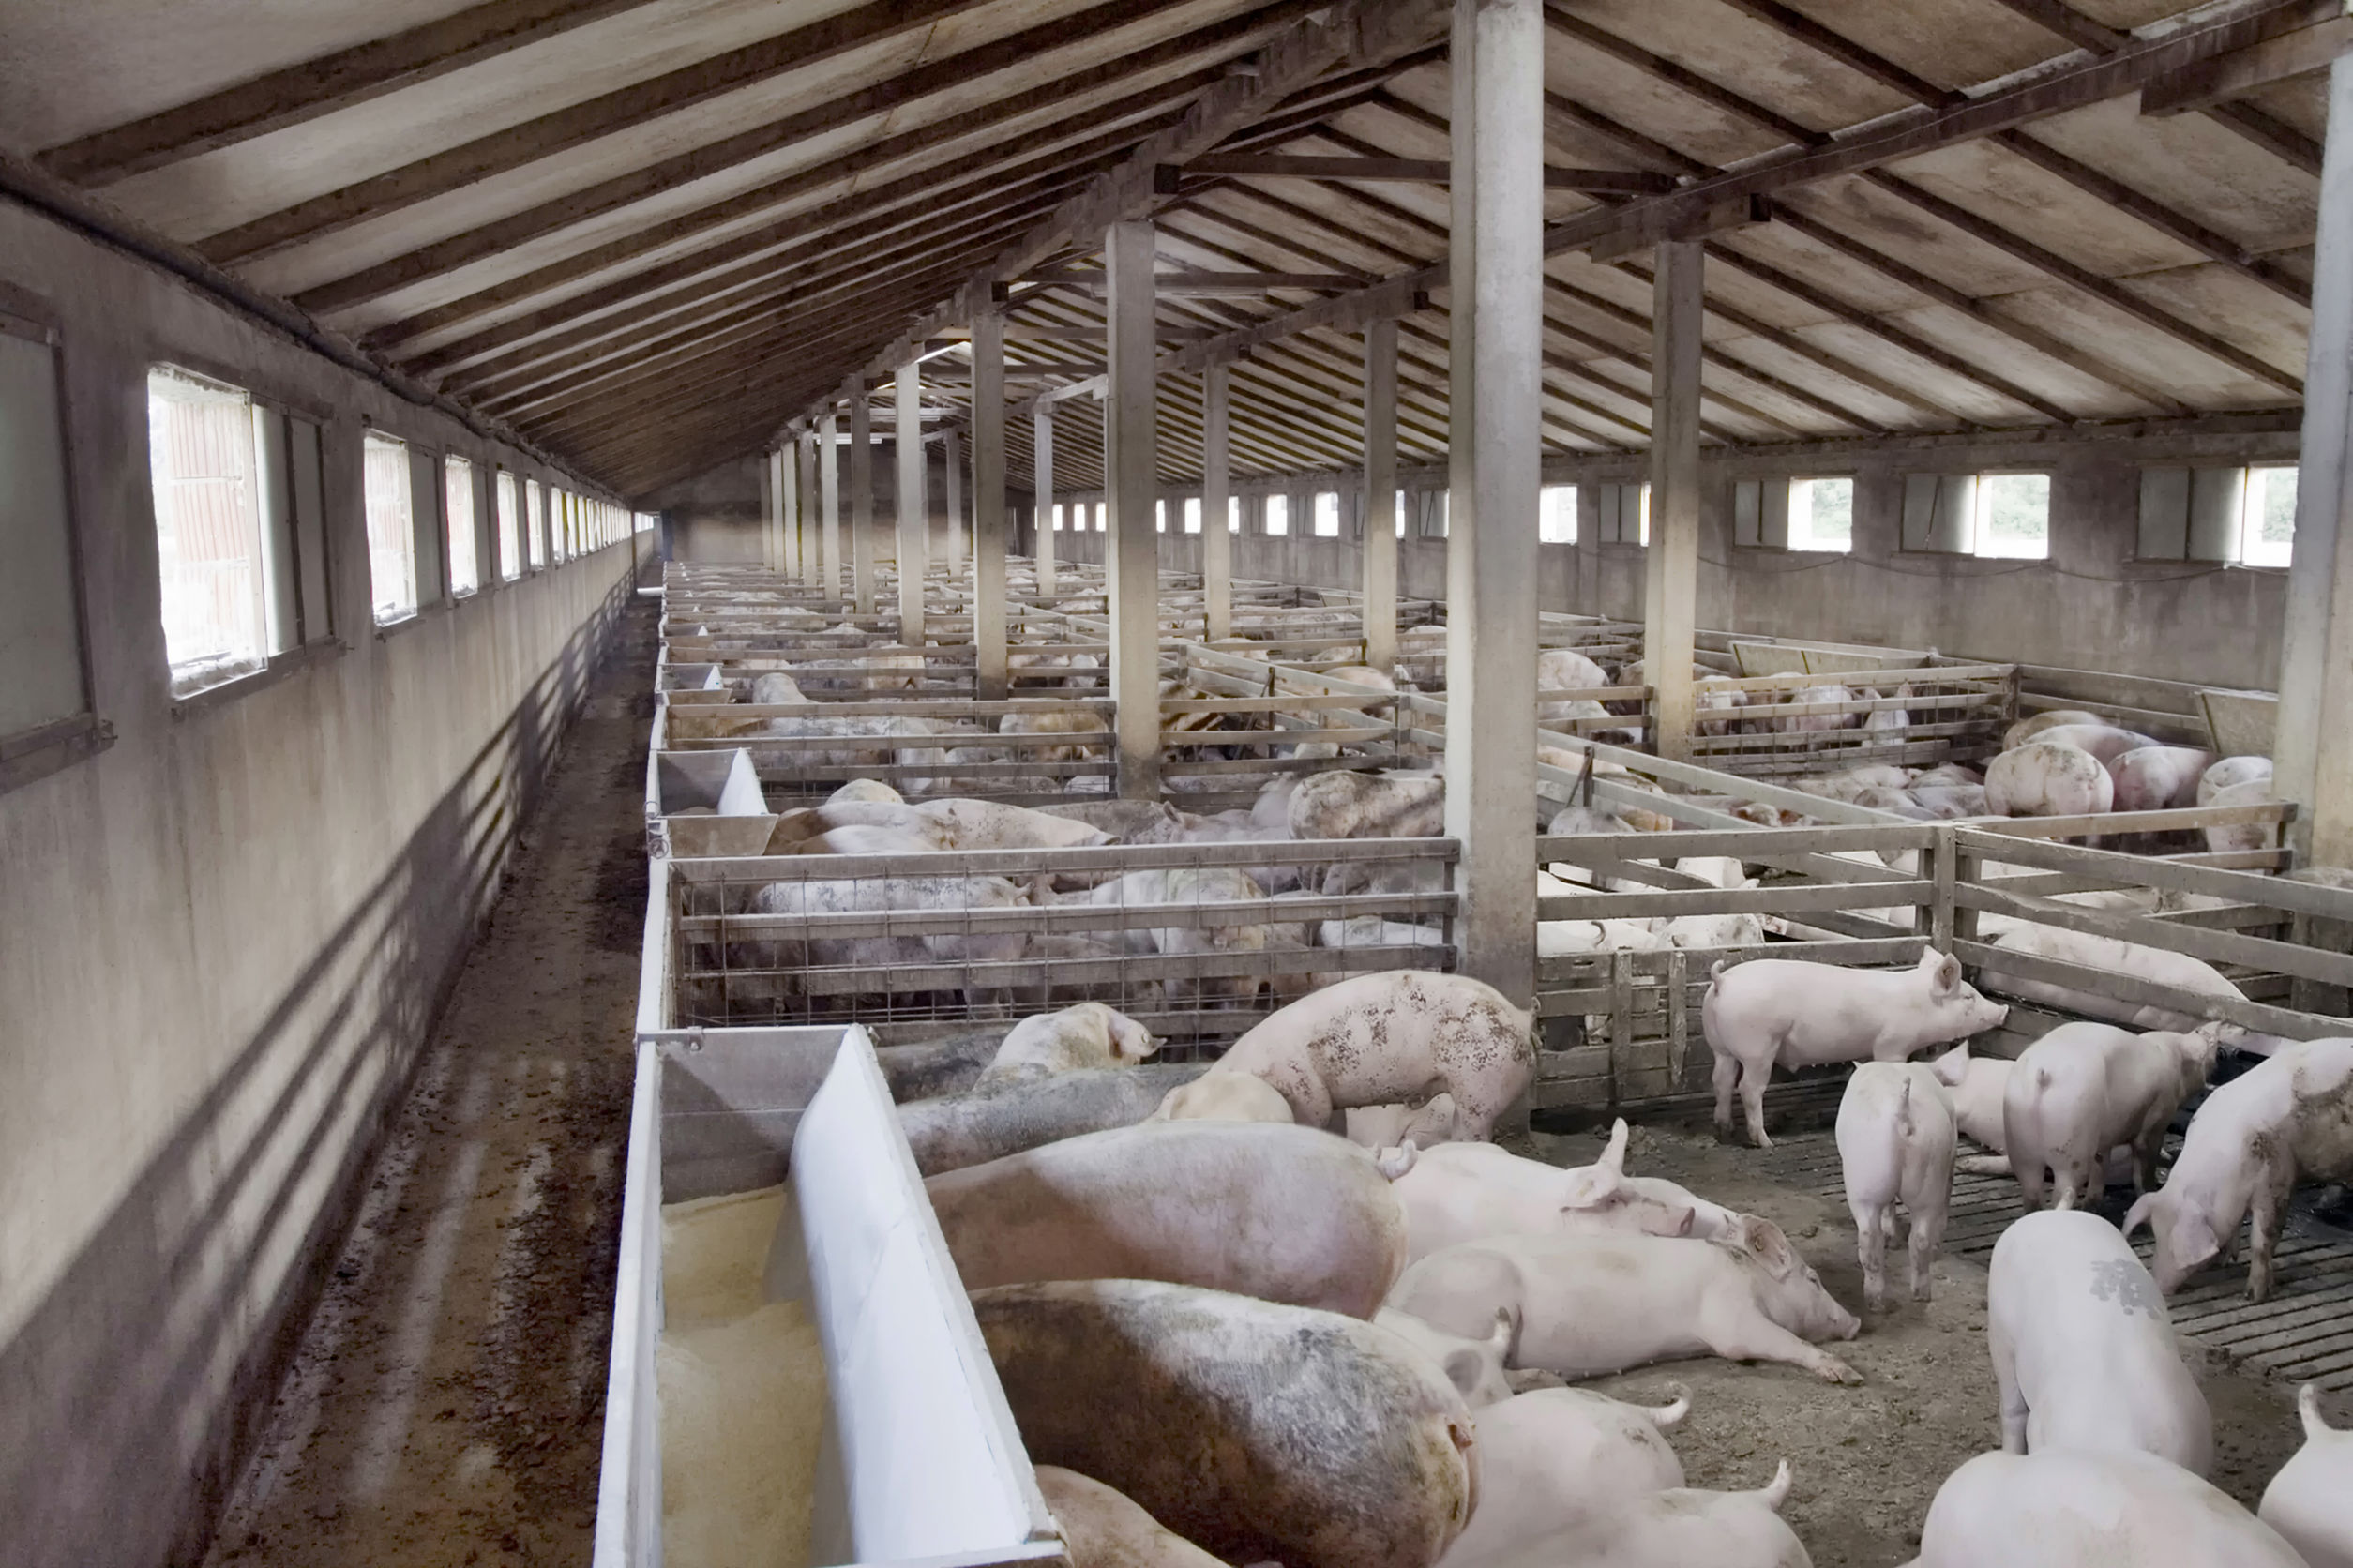 ANSVSA: Numărul porcilor bolnavi de pestă şi sacrificaţi a ajuns la 159.645 şi sunt 11 judeţe afectate